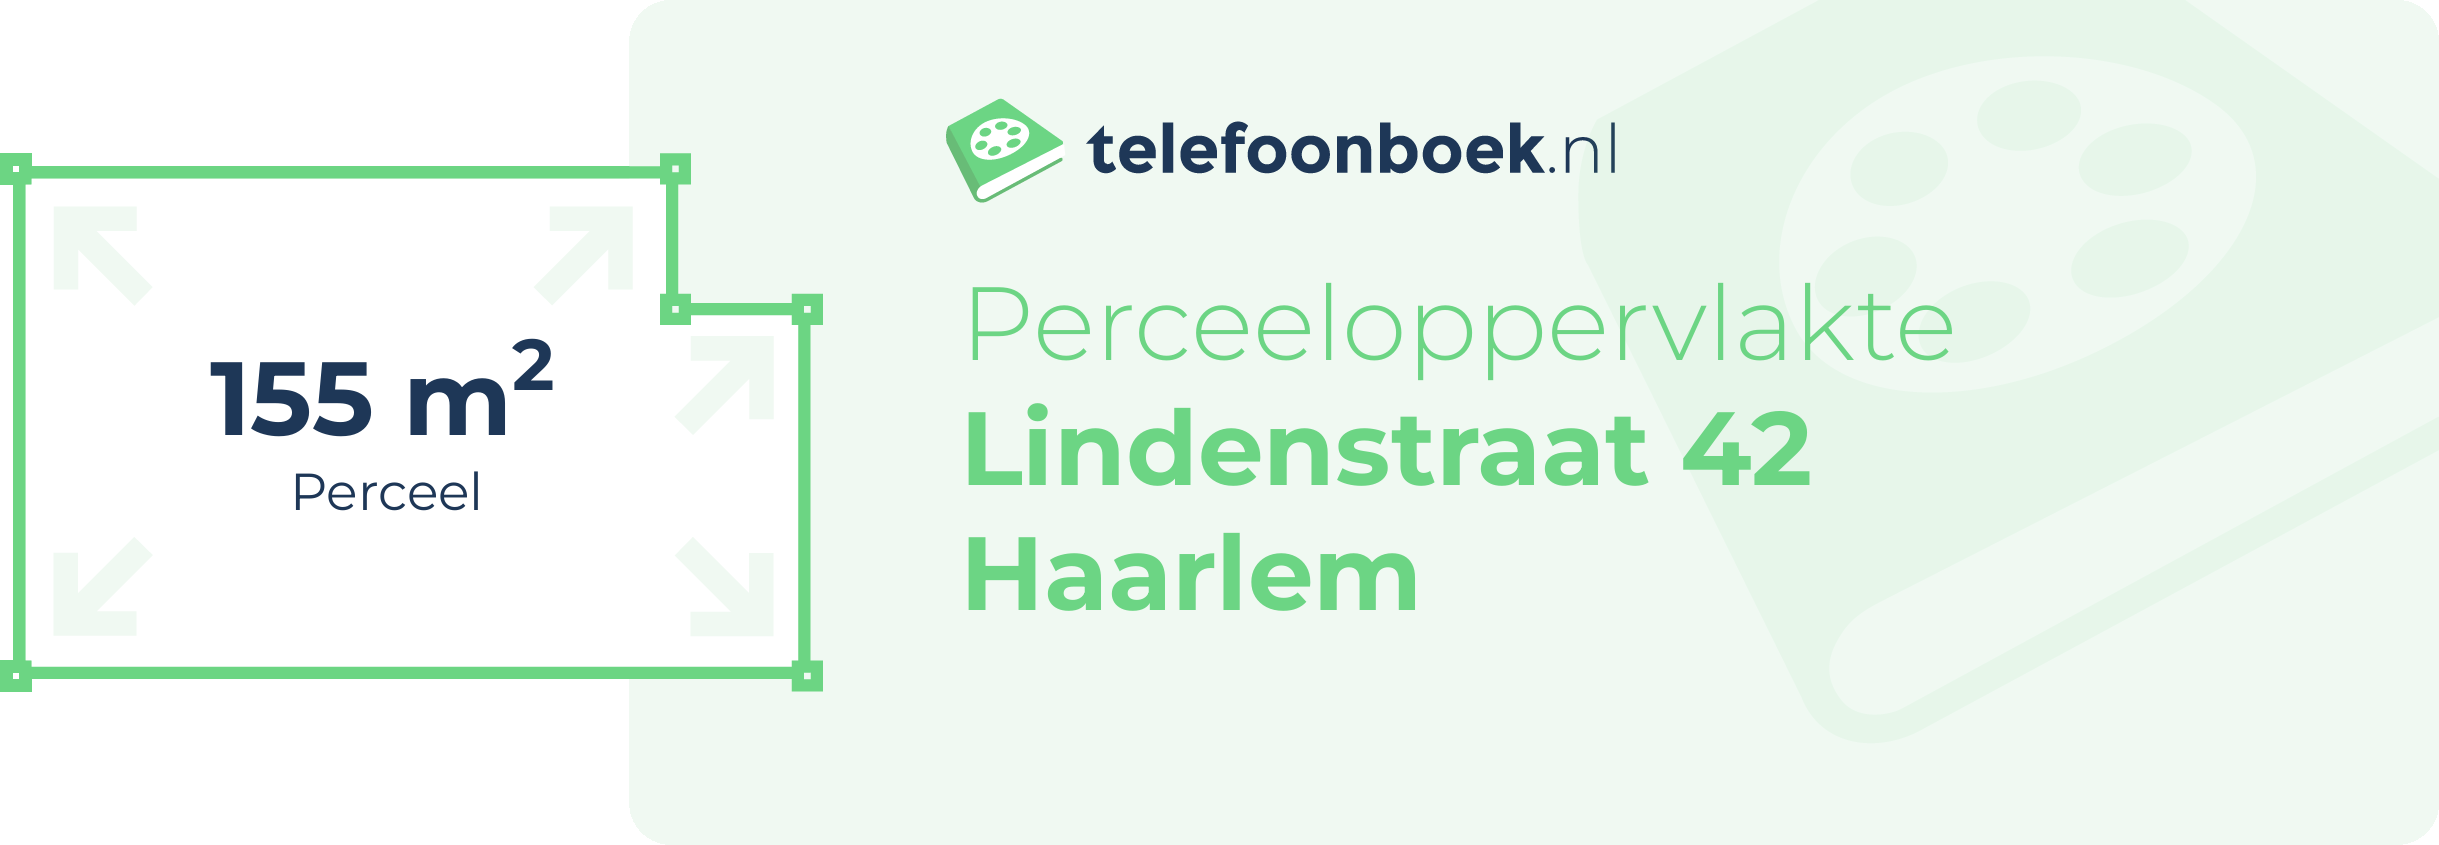 Perceeloppervlakte Lindenstraat 42 Haarlem